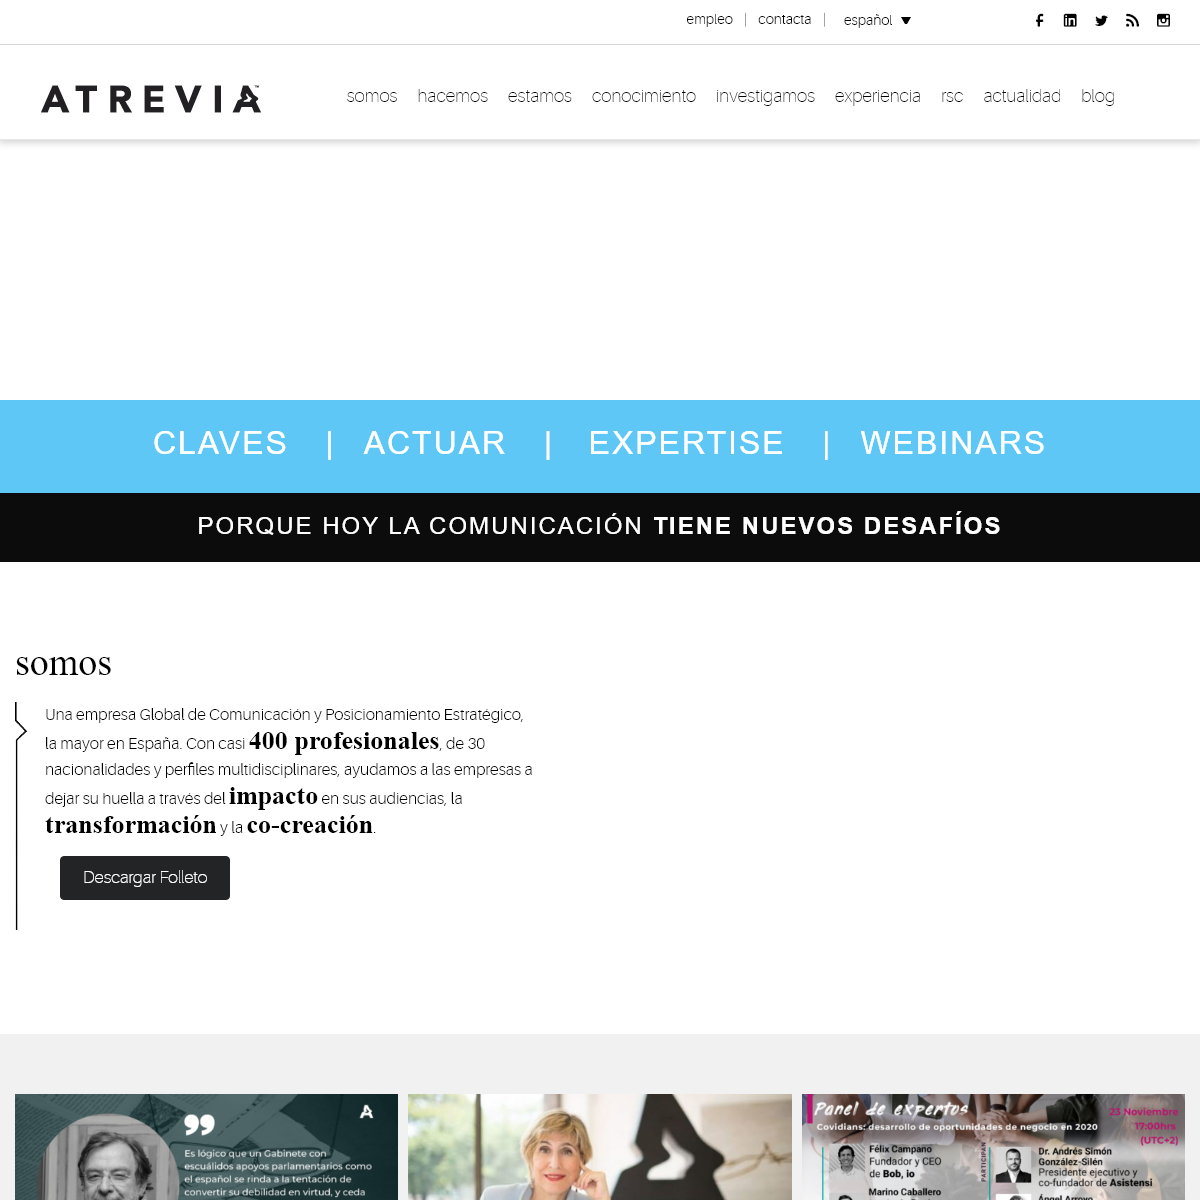 A complete backup of atrevia.com